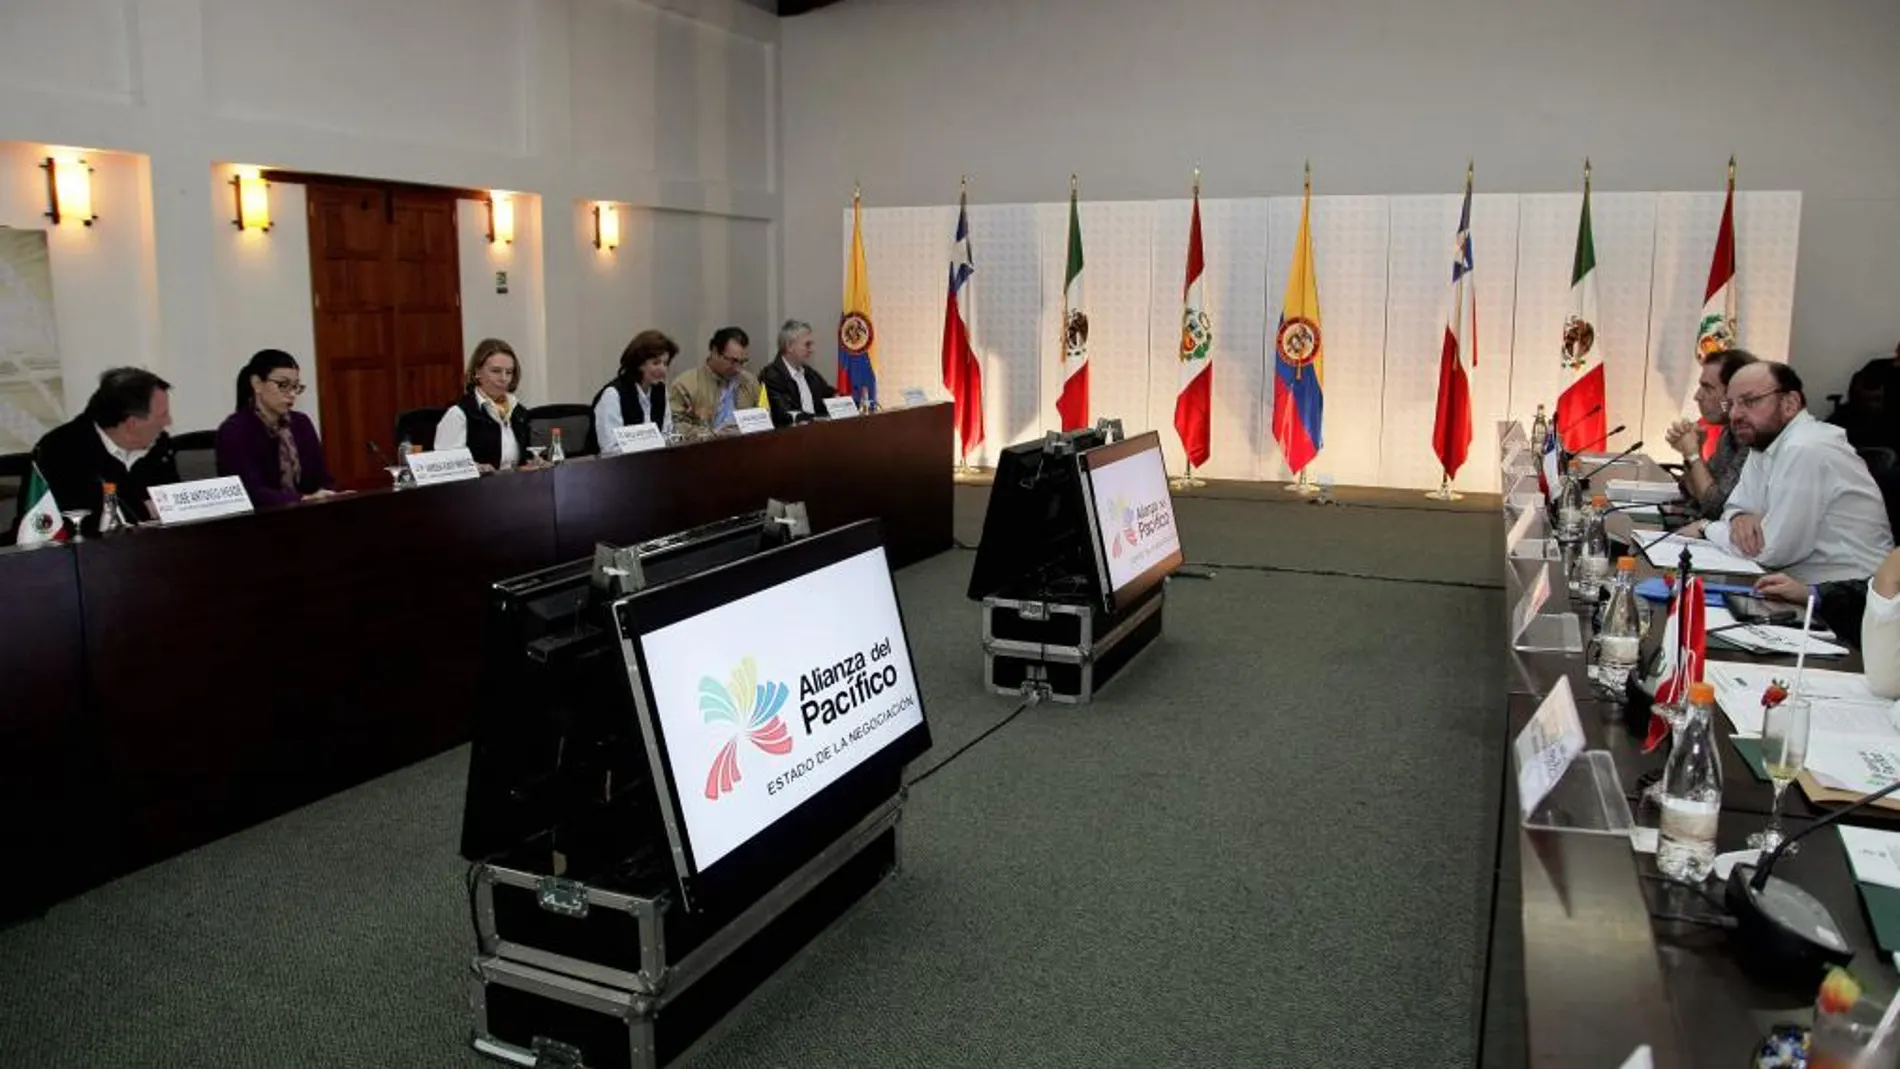 Fotografía cedida por la cancillería de Colombia de la VIII Reunión de Ministros de Relaciones Exteriores y de Comercio Exterior de la Alianza del Pacífico, que se realiza hoy, sábado 29 de junio de 2013, en Villa de Leyva (Colombia).